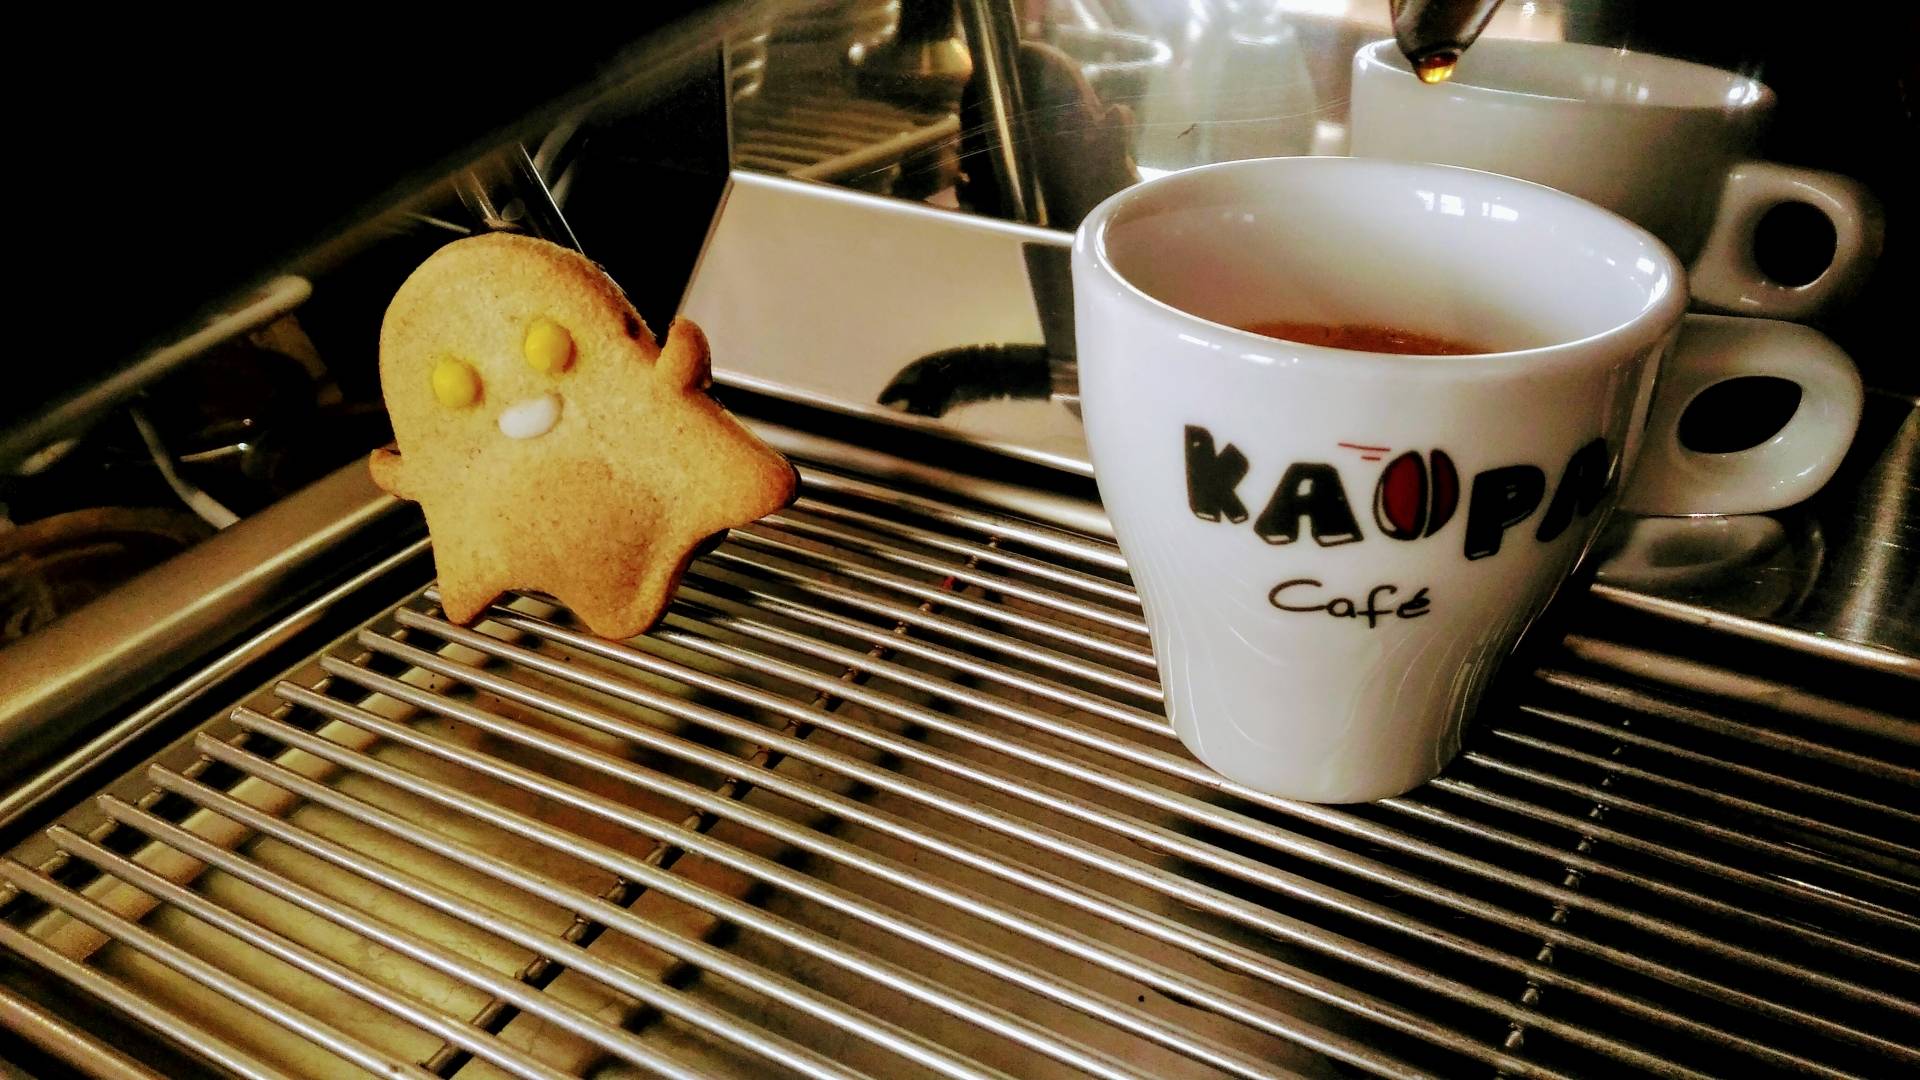 Kaopa Café